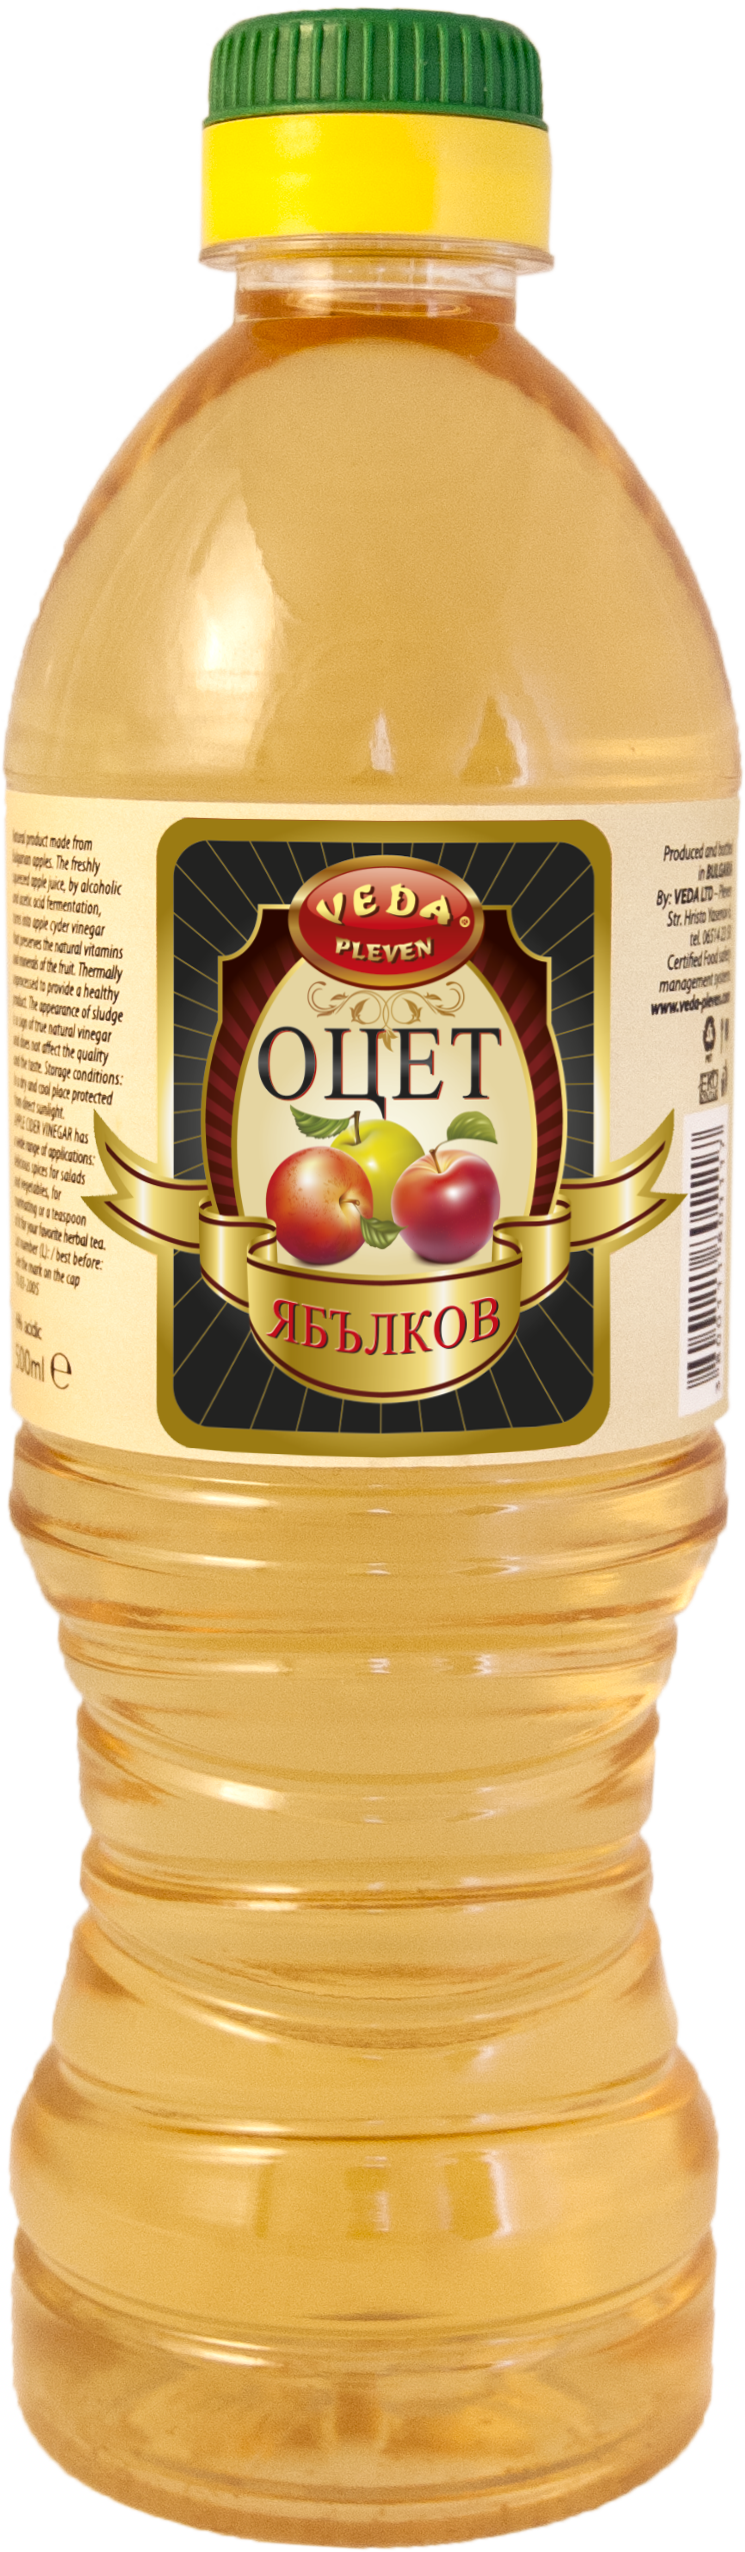 Уксус Яблочный 5% 0,5 литров /ПЭТ ТМ "VEDA"